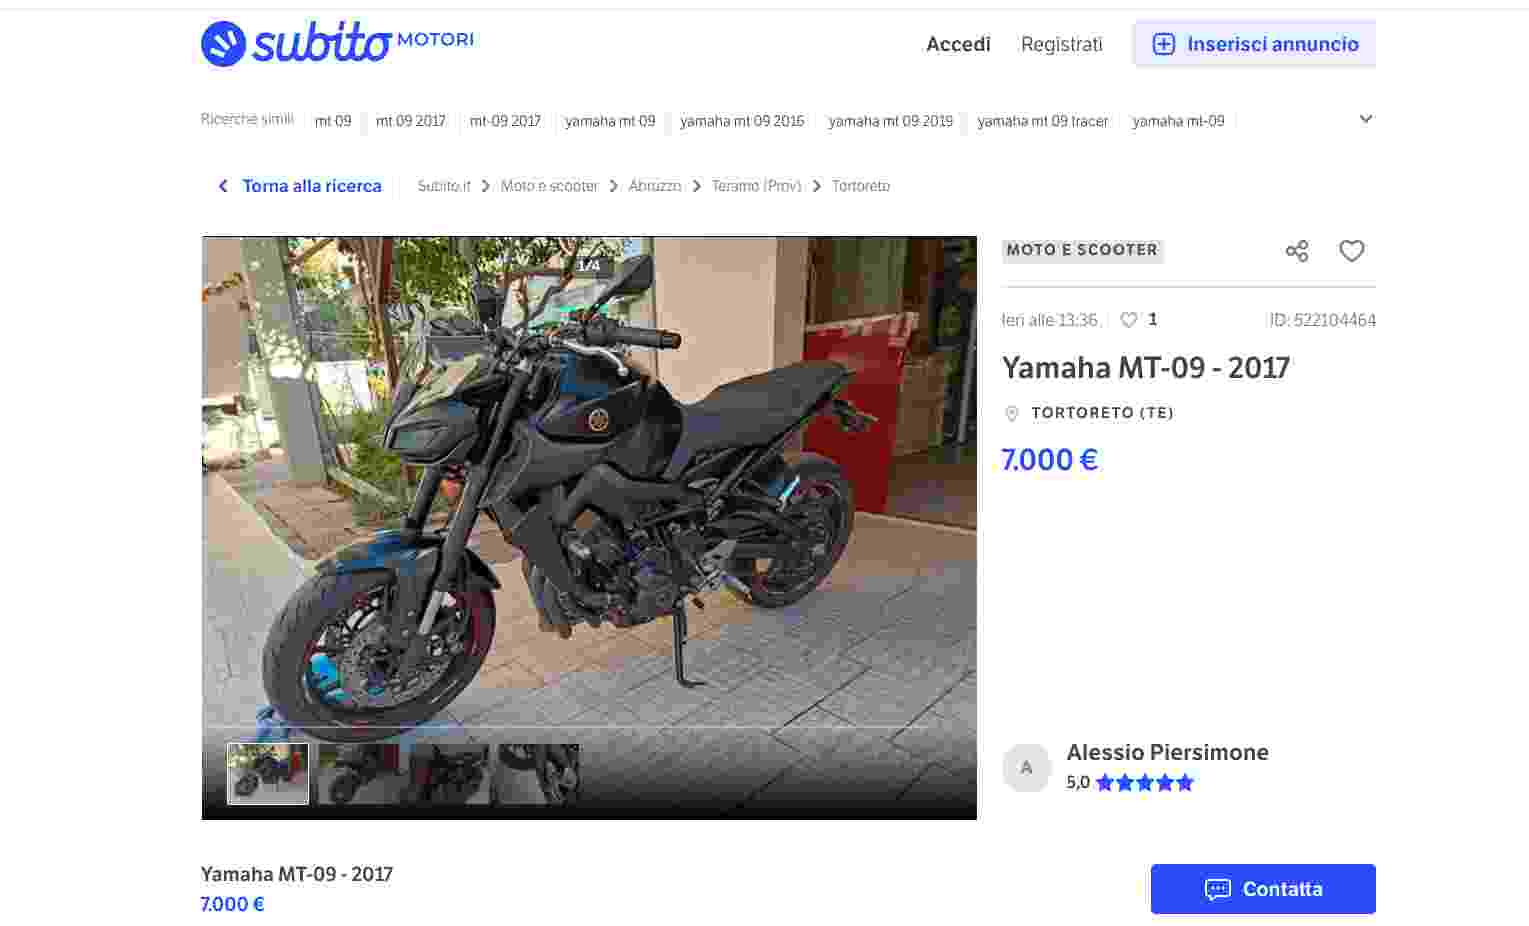 Yamaha MT-09 in vendita a un prezzo stracciato